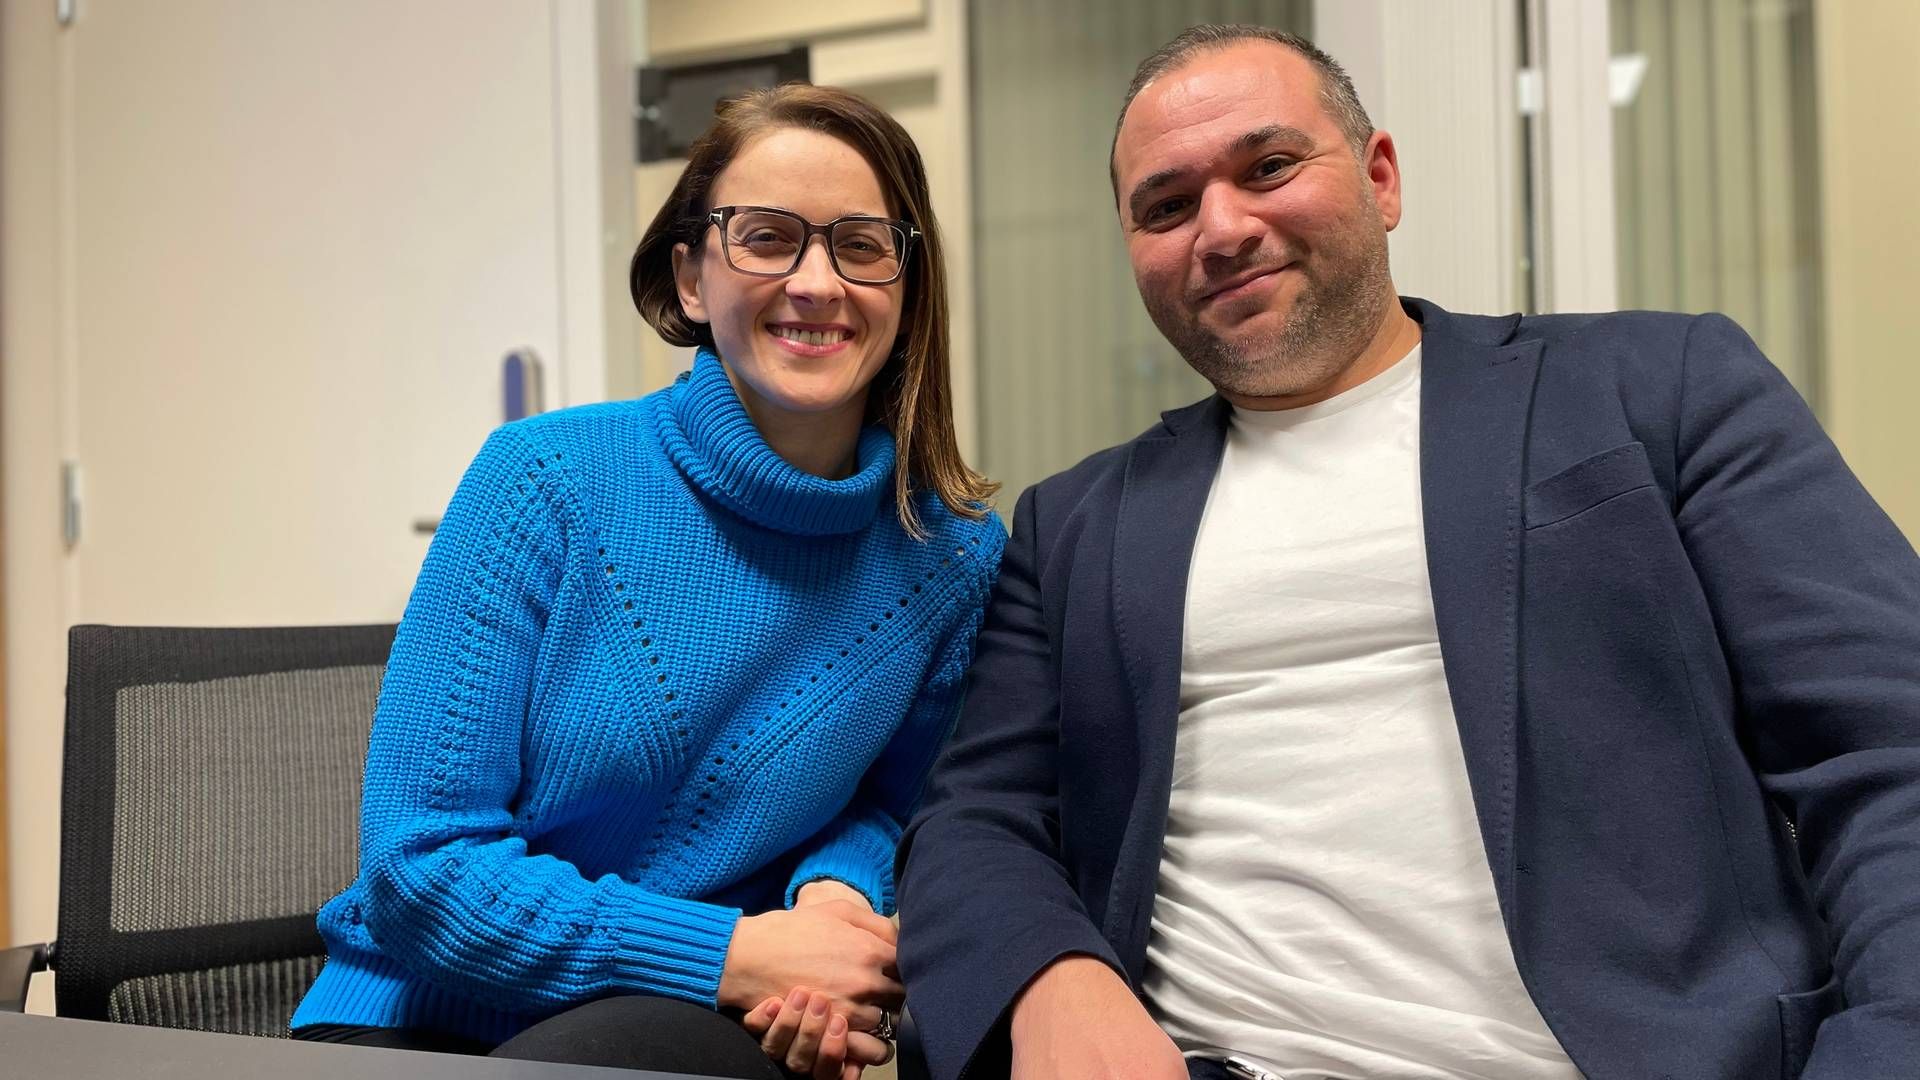 DUO: Ekteparet Larysa og Serkan Bulut driver Bulut & Co Advokatfirma som i fjor omsatte for 7,7 millioner kroner. | Foto: Stian Olsen/AdvokatWatch